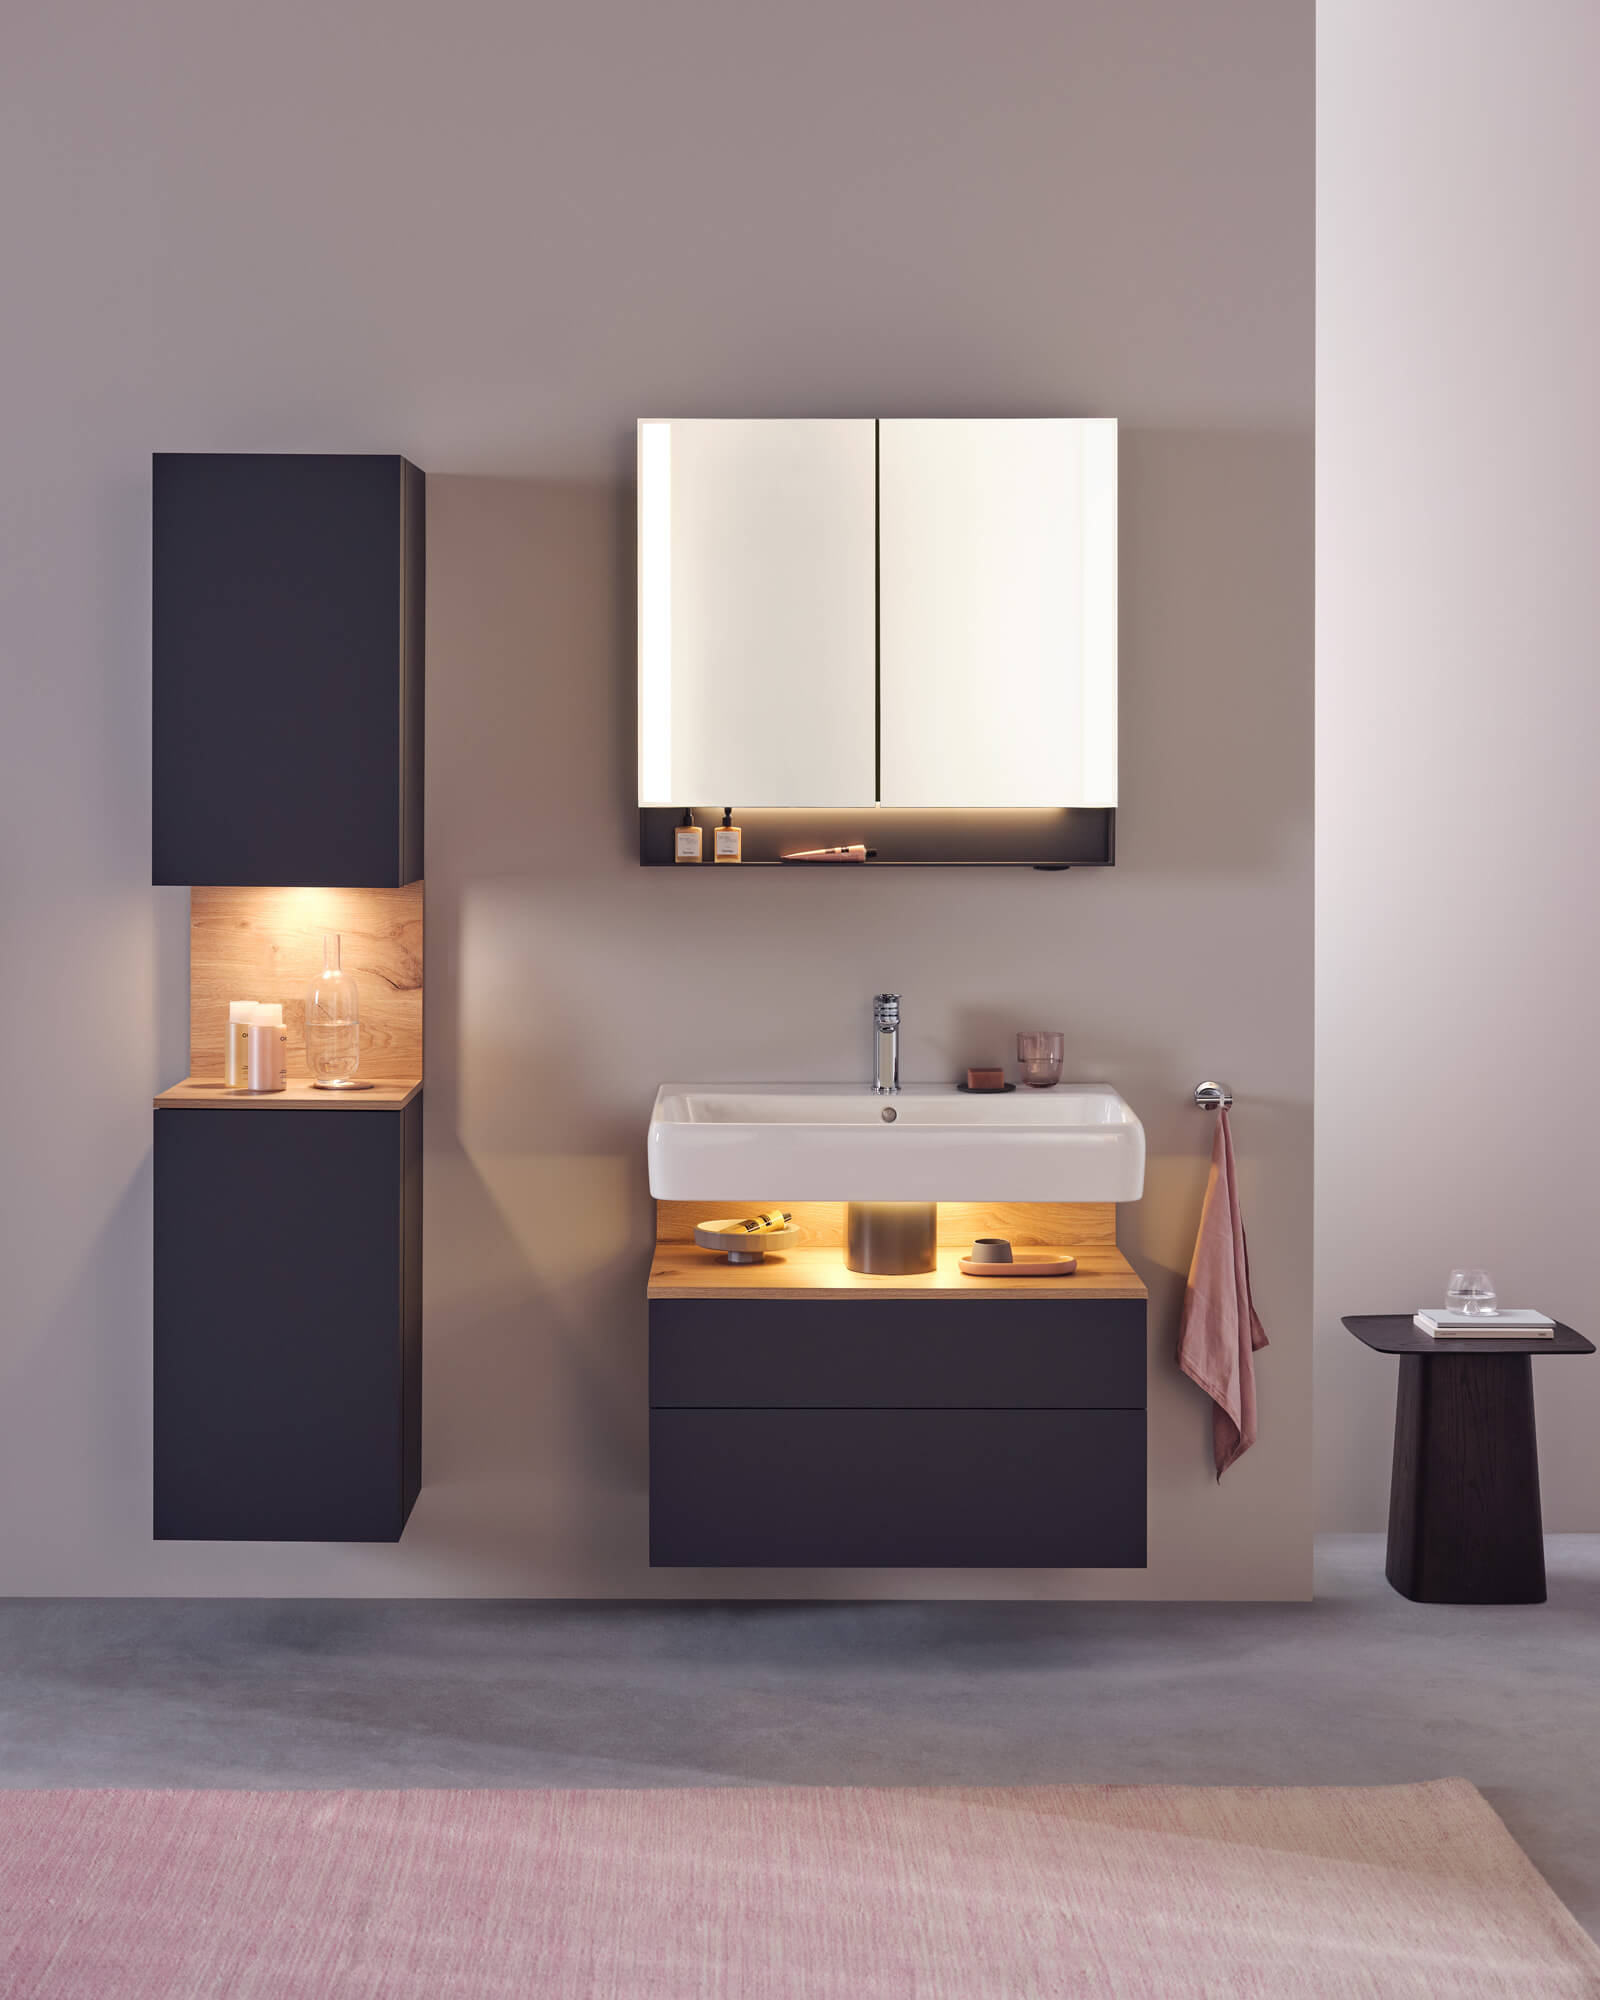 Qatego bathroom furniture in high-quality design 
